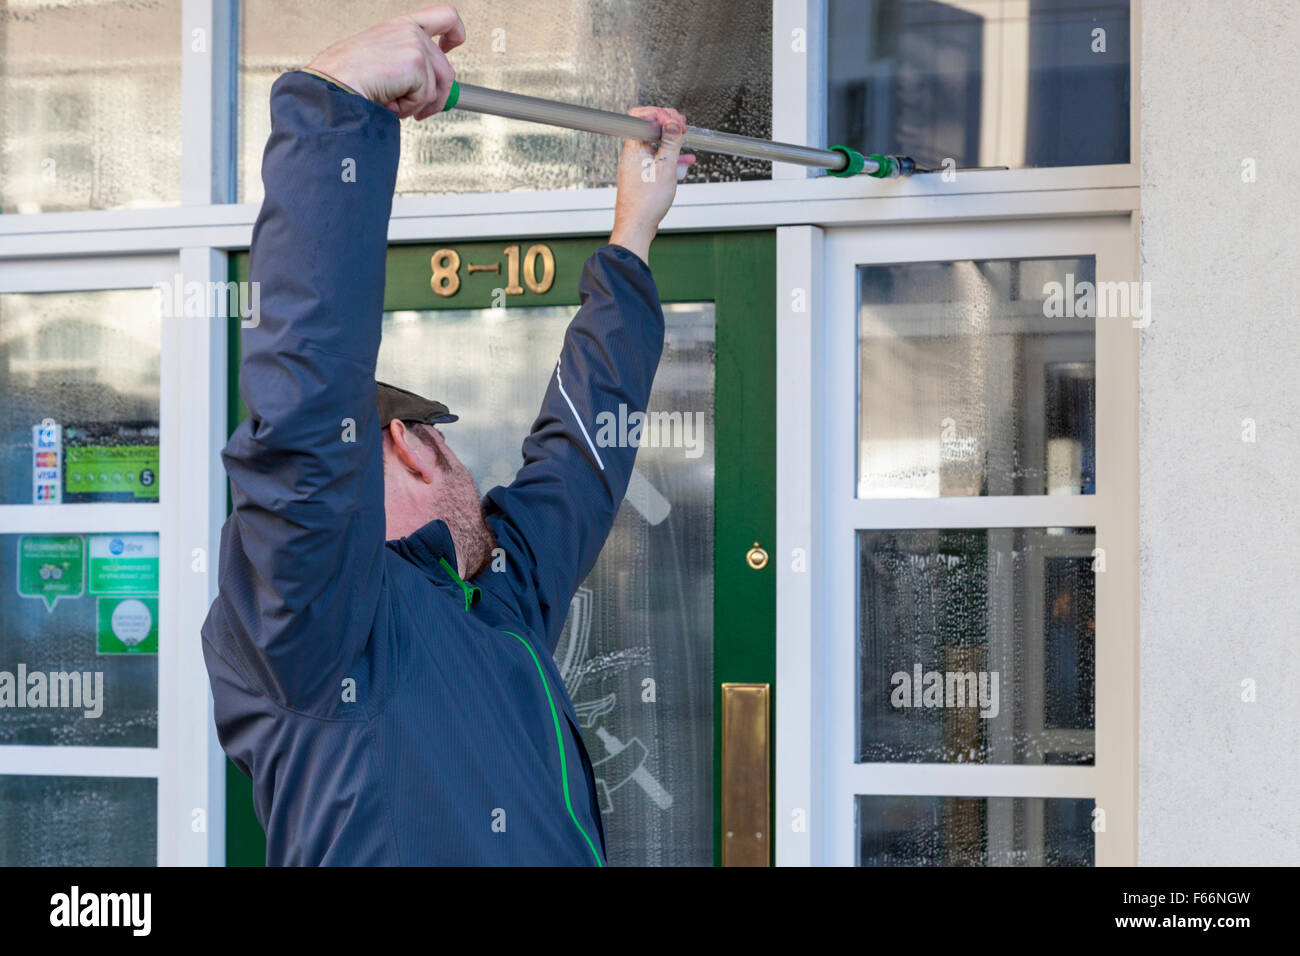 Window cleaning. Window cleaner cleaning windows of a business, Nottingham, England, UK Stock Photo